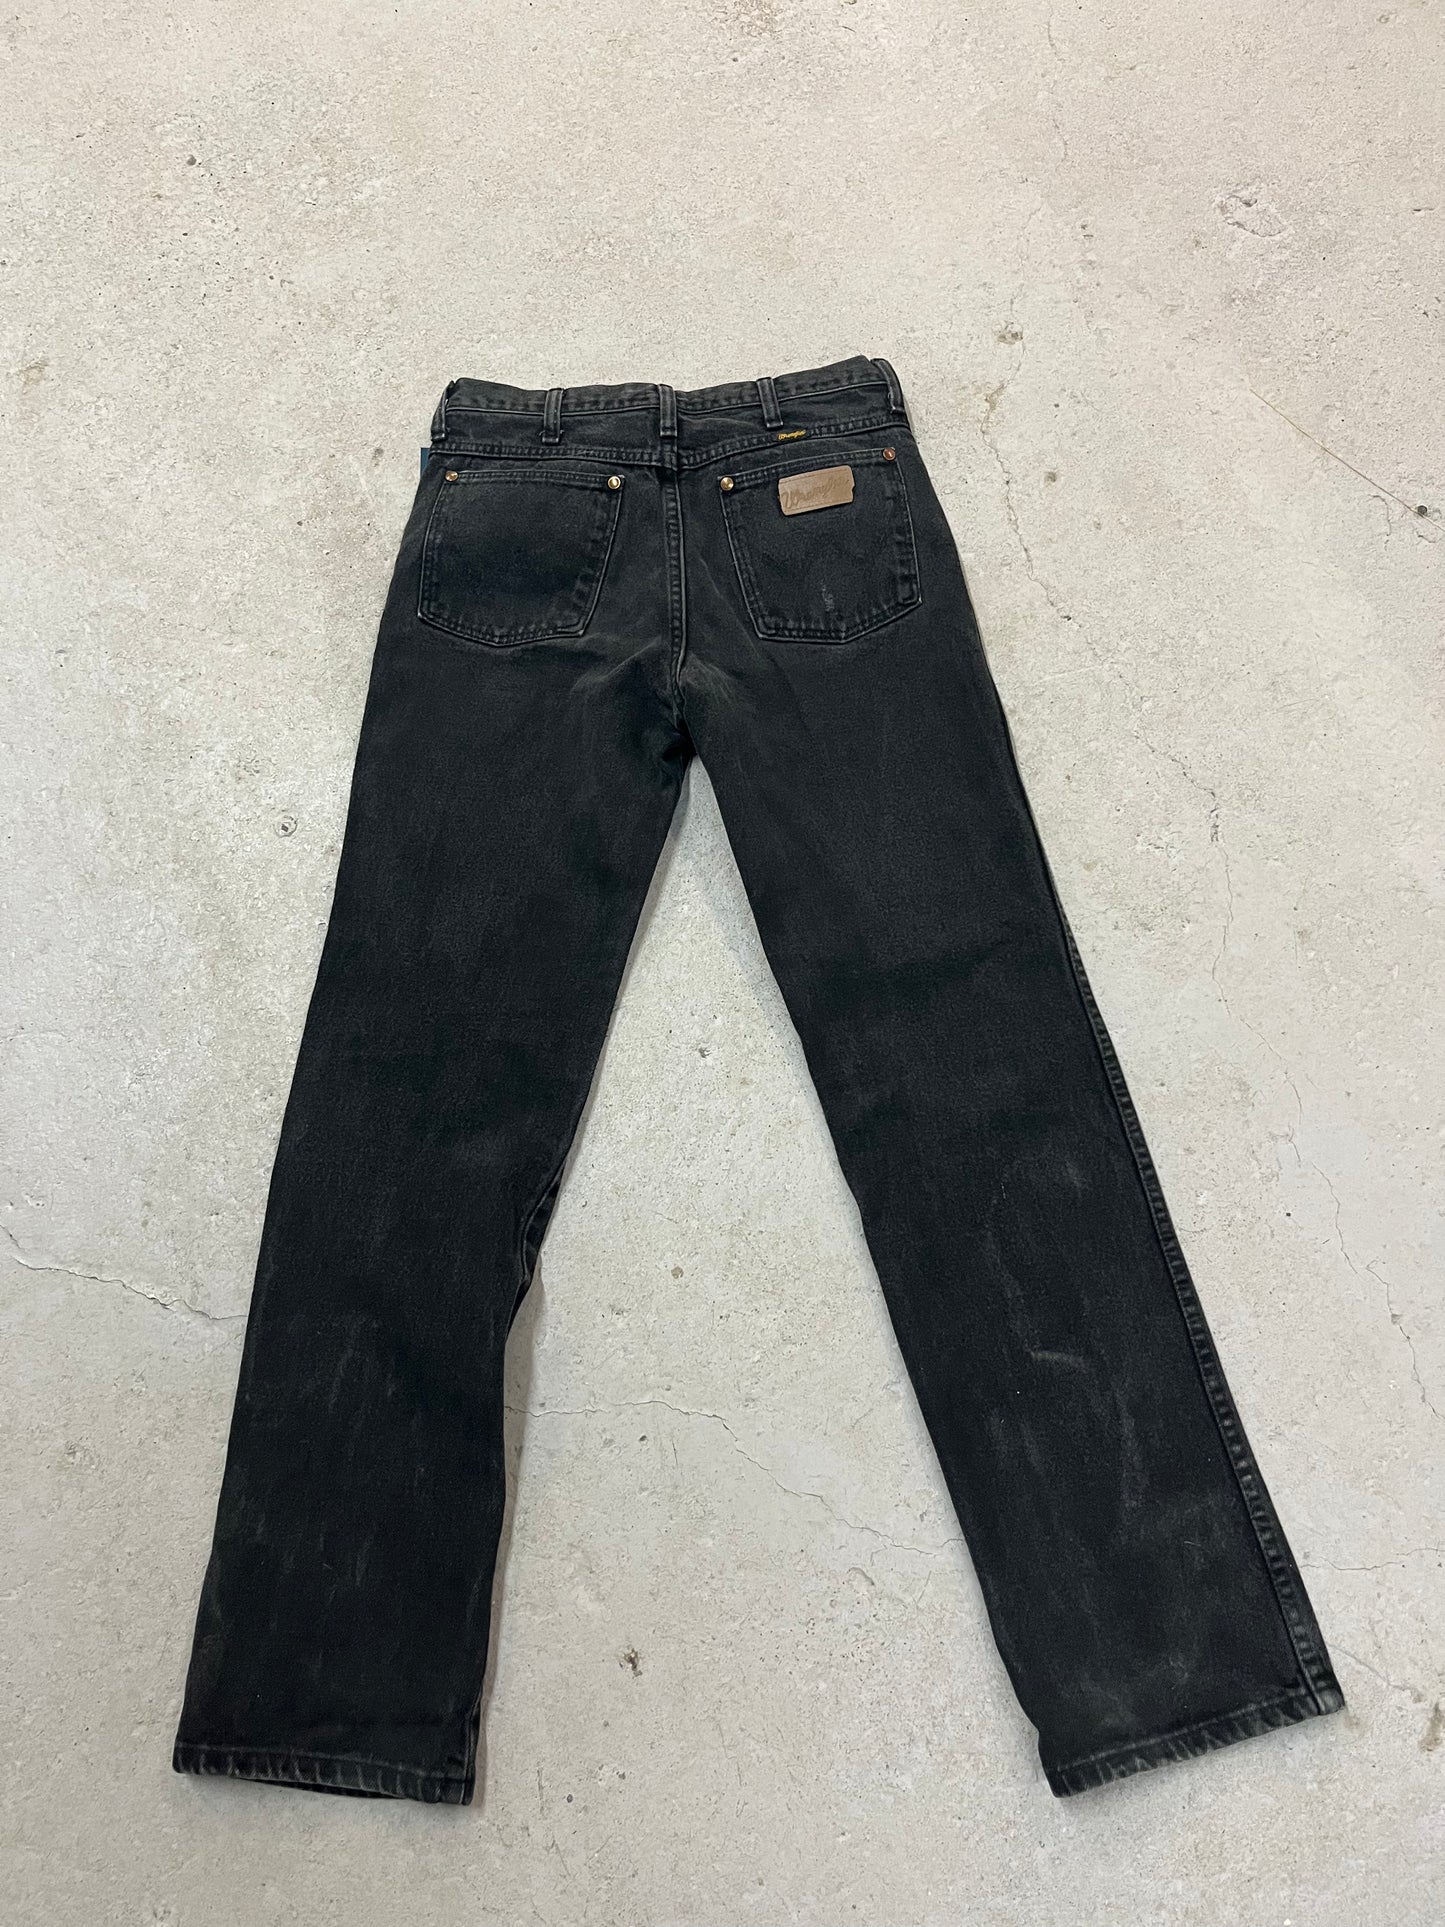 90’s Vintage Wrangler Faded Black Wash Jeans / 29 Waist